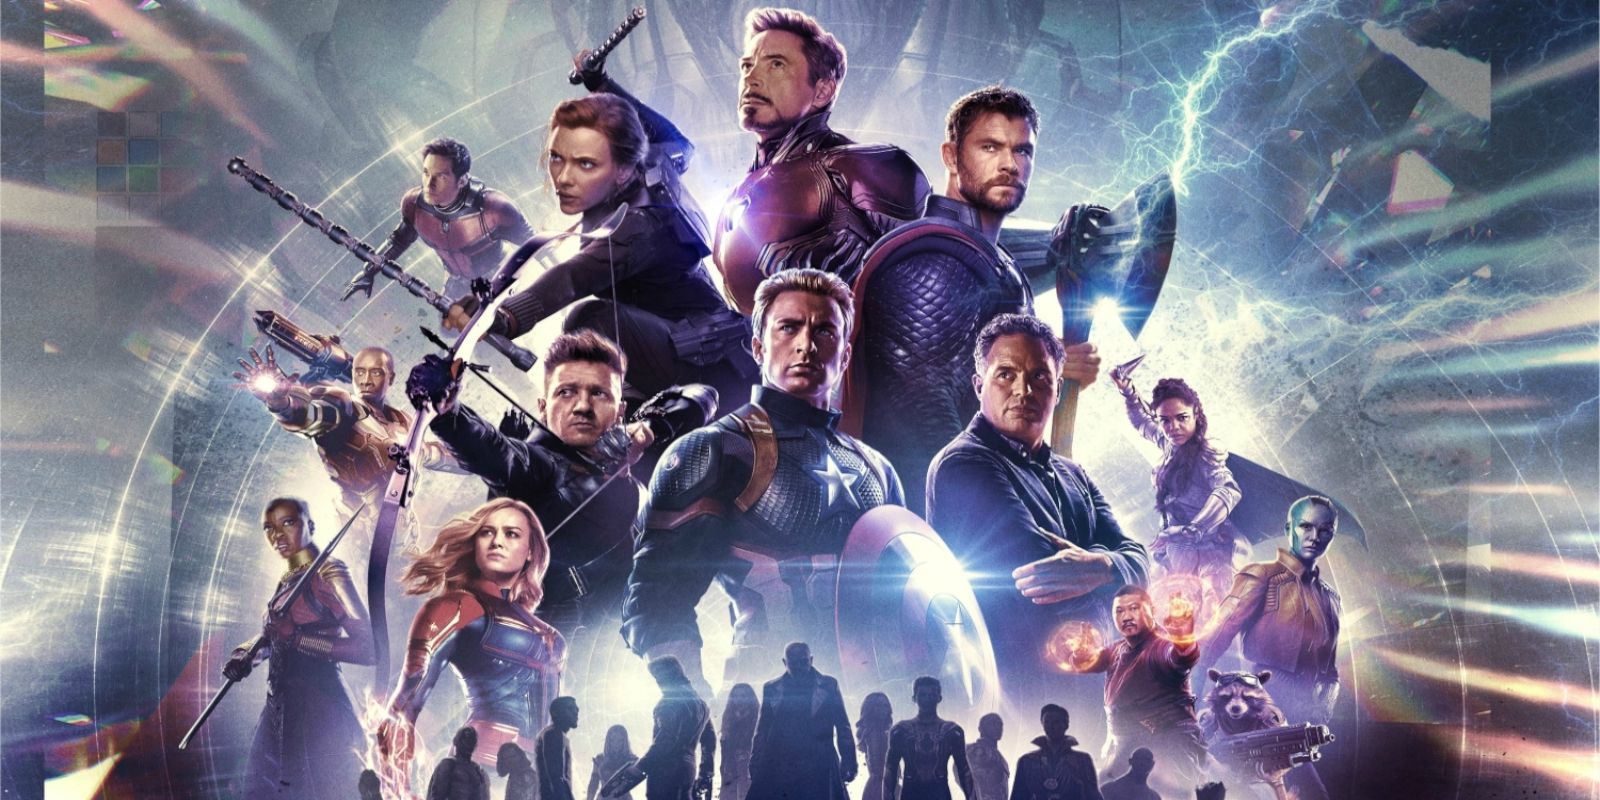 The Avengers assembled for Avengers: Endgame